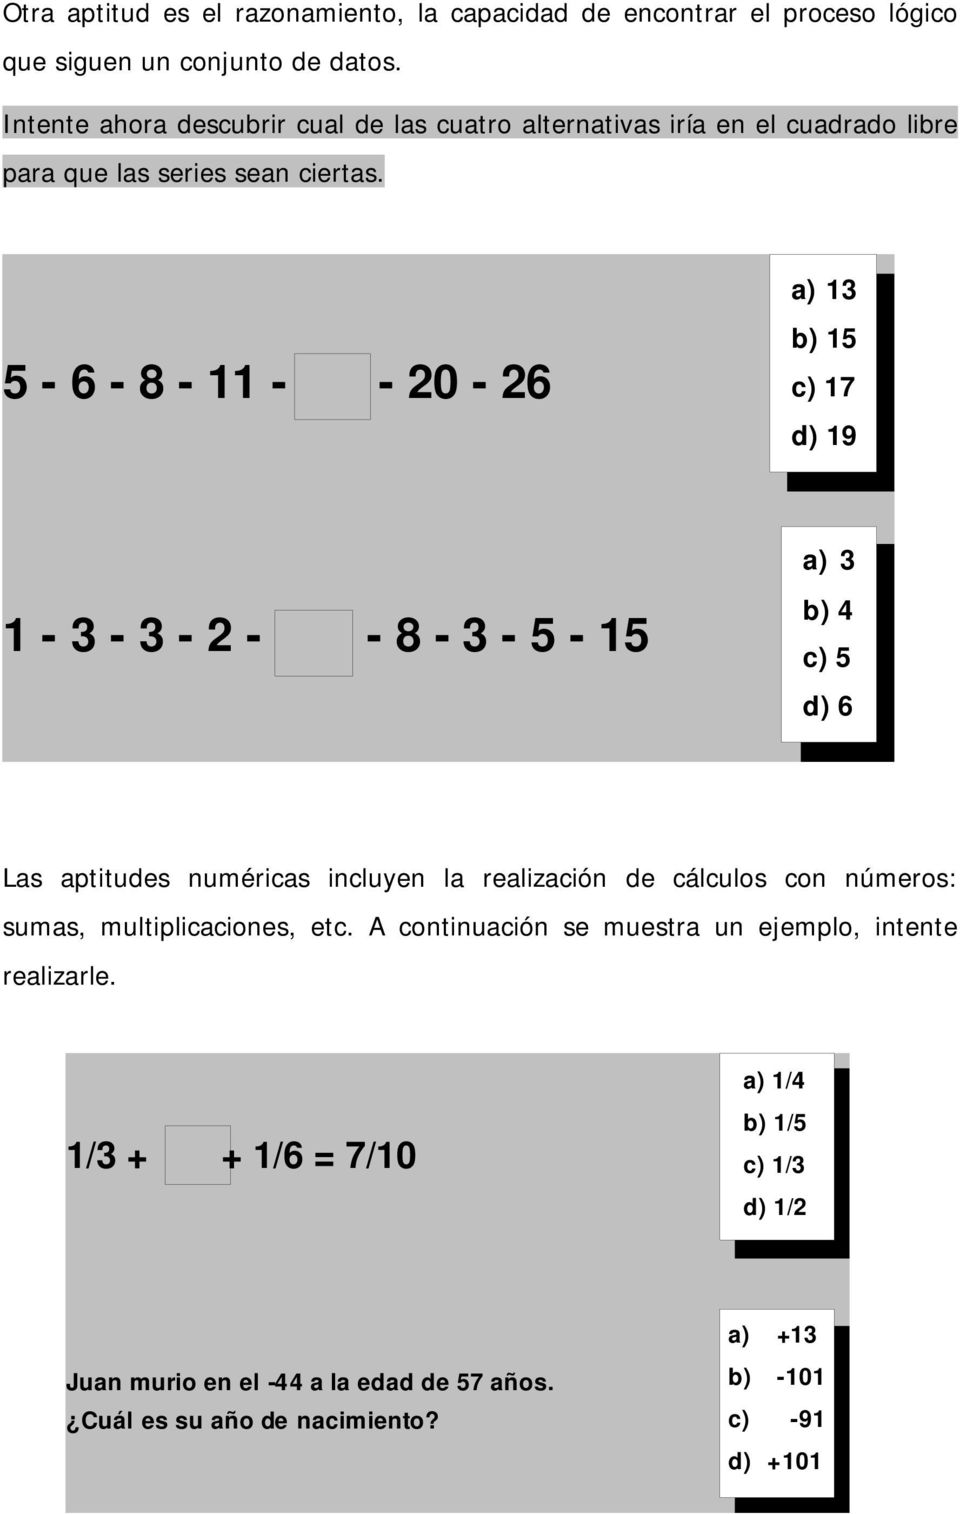 5-6 - 8-11 - - 20-26 a) 13 b) 15 c) 17 d) 19 a) 3 1-3 - 3-2 - - 8-3 - 5-15 b) 4 c) 5 d) 6 Las aptitudes numéricas incluyen la realización de cálculos con